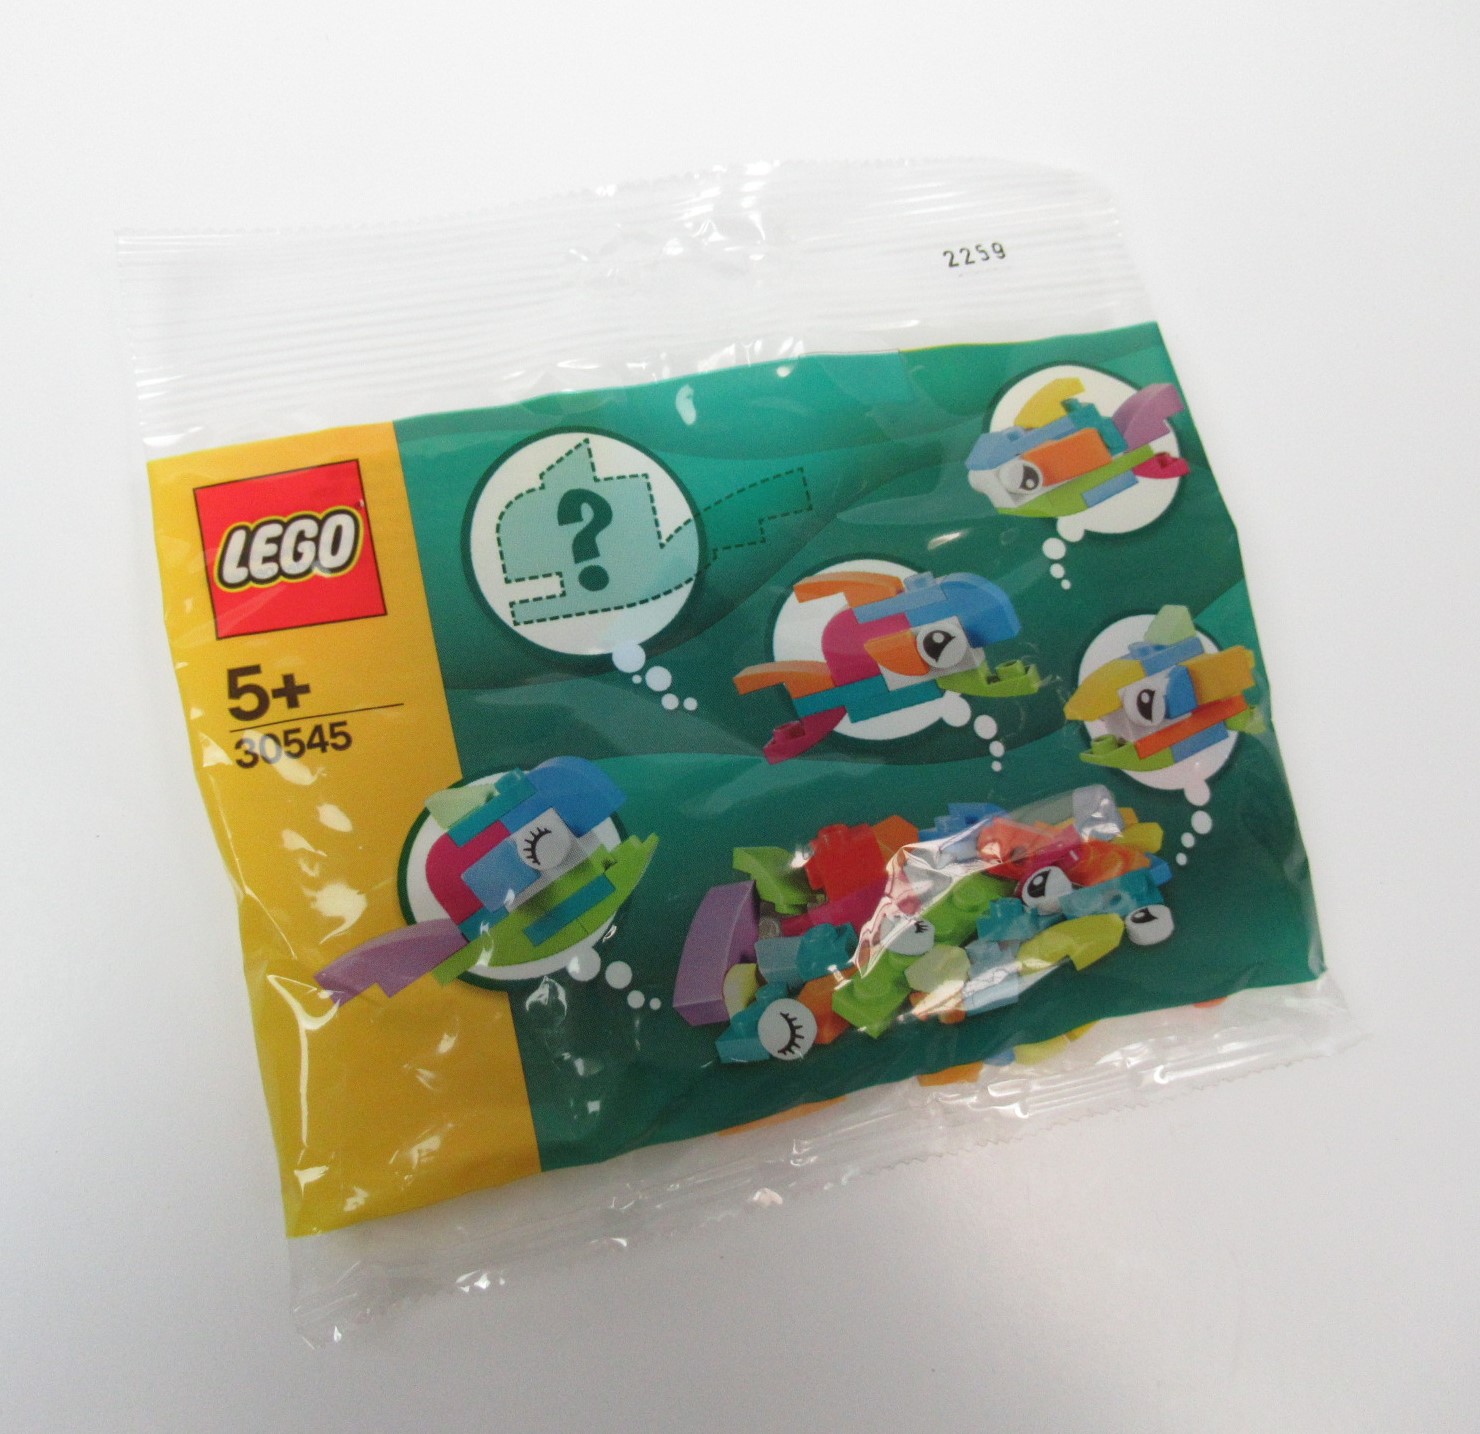 Immagine relativa a LEGO® Creator 30545 Freies Bauen: Fische Polybag